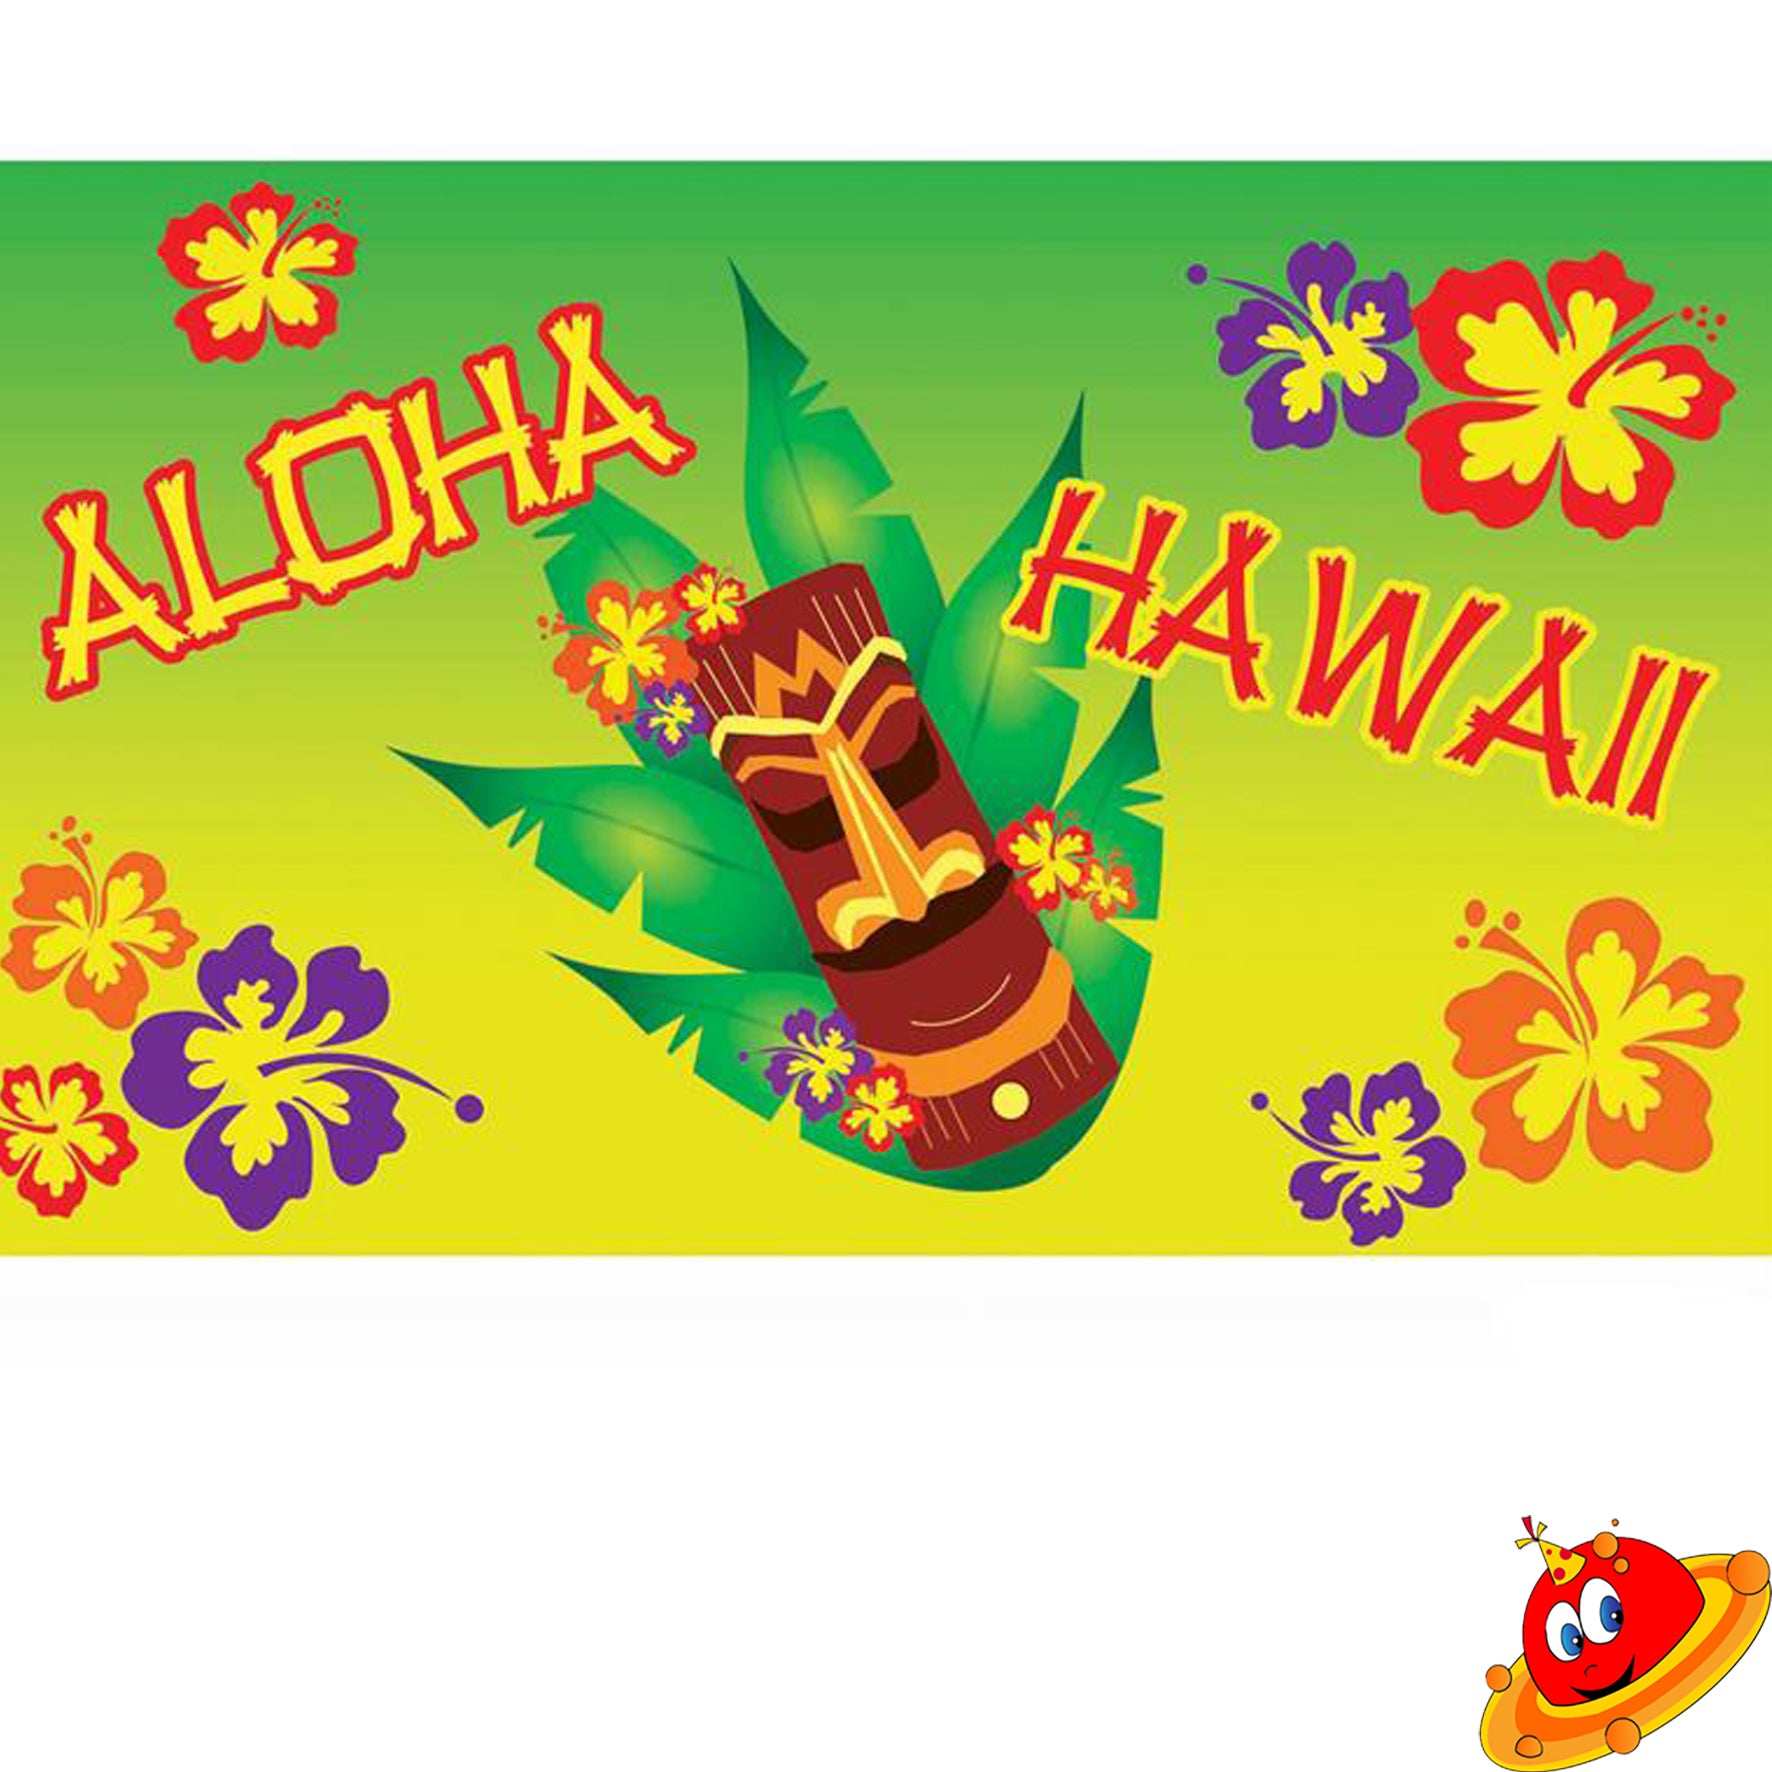 Decorazione festa Hawaiana bandiera Aloha Party – Universo In Festa